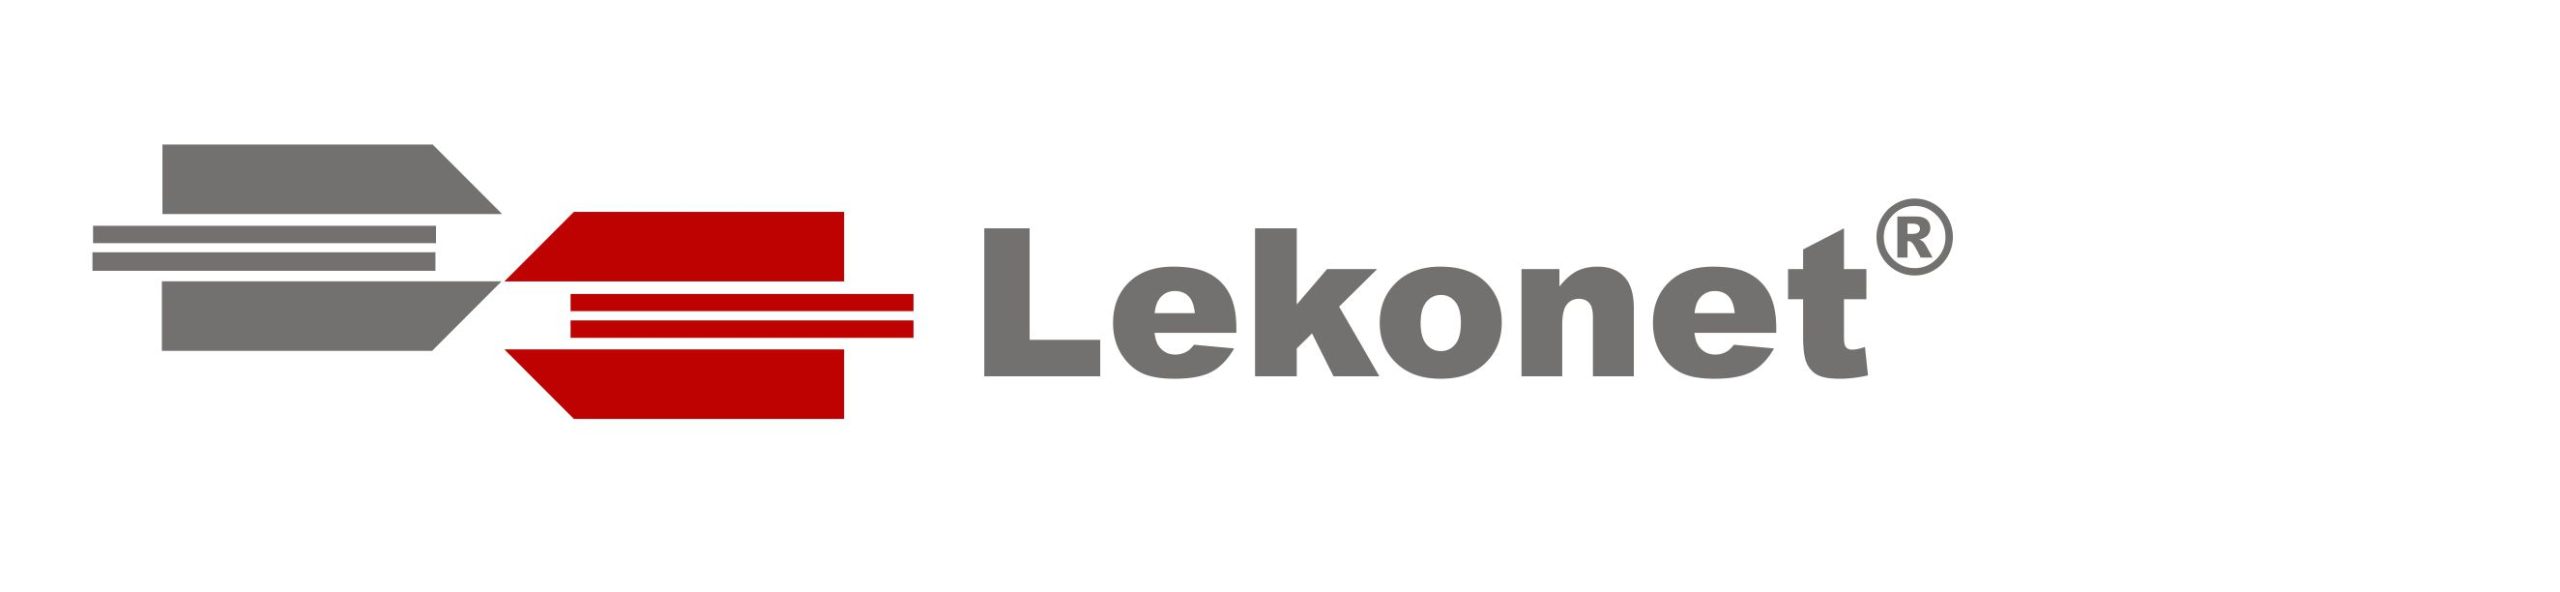 Lekonet Daten- und Fernmeldetechnik GmbH